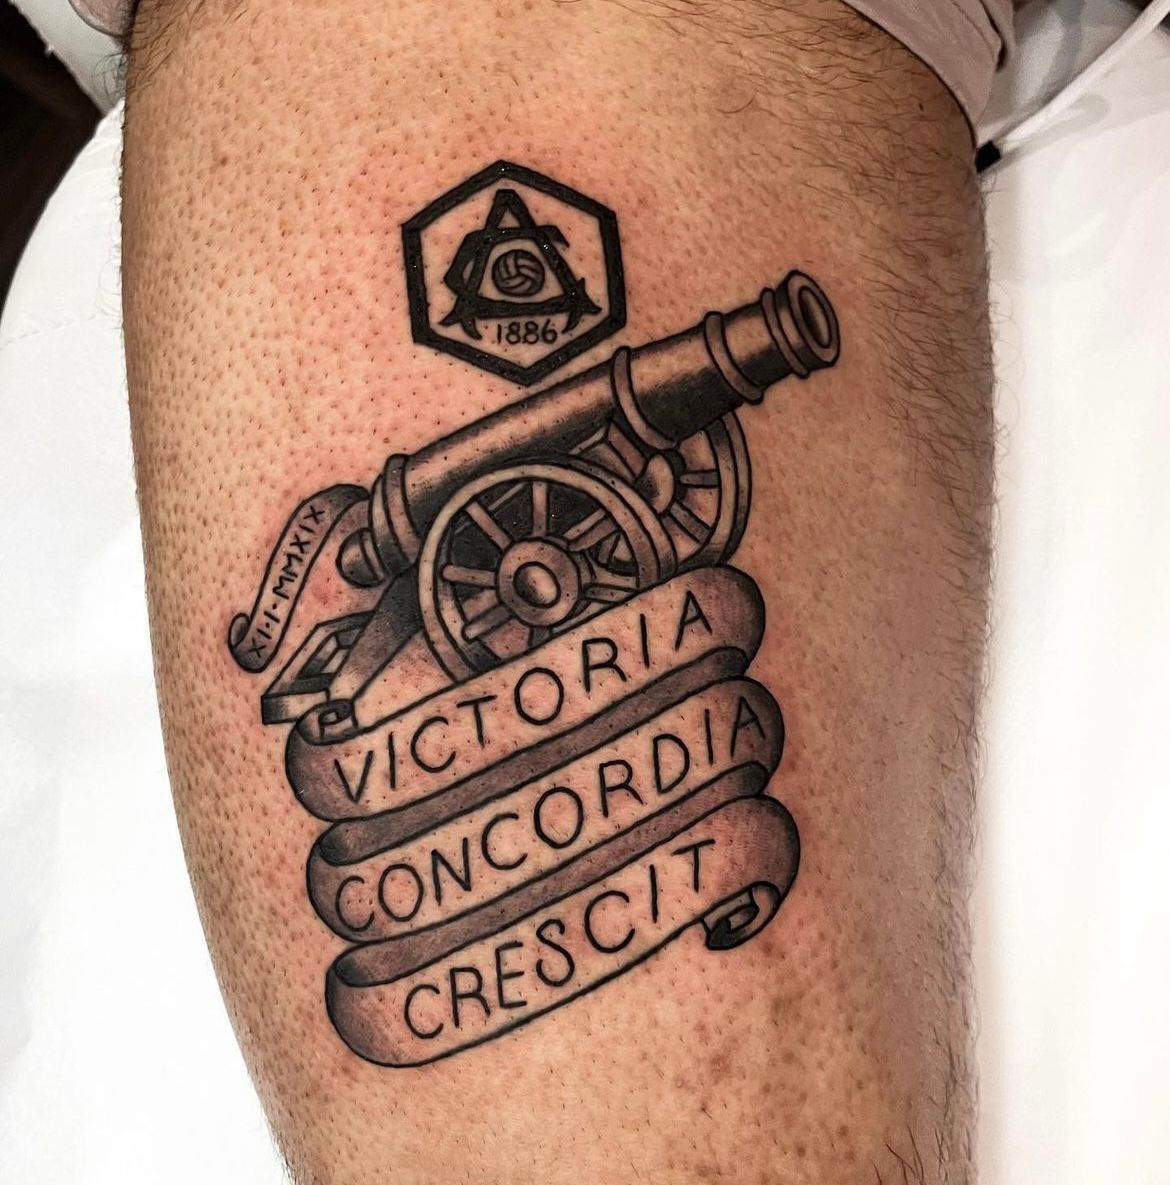 Tattoo uploaded by Matthias Nielsen • Arsenal fan logo • Tattoodo